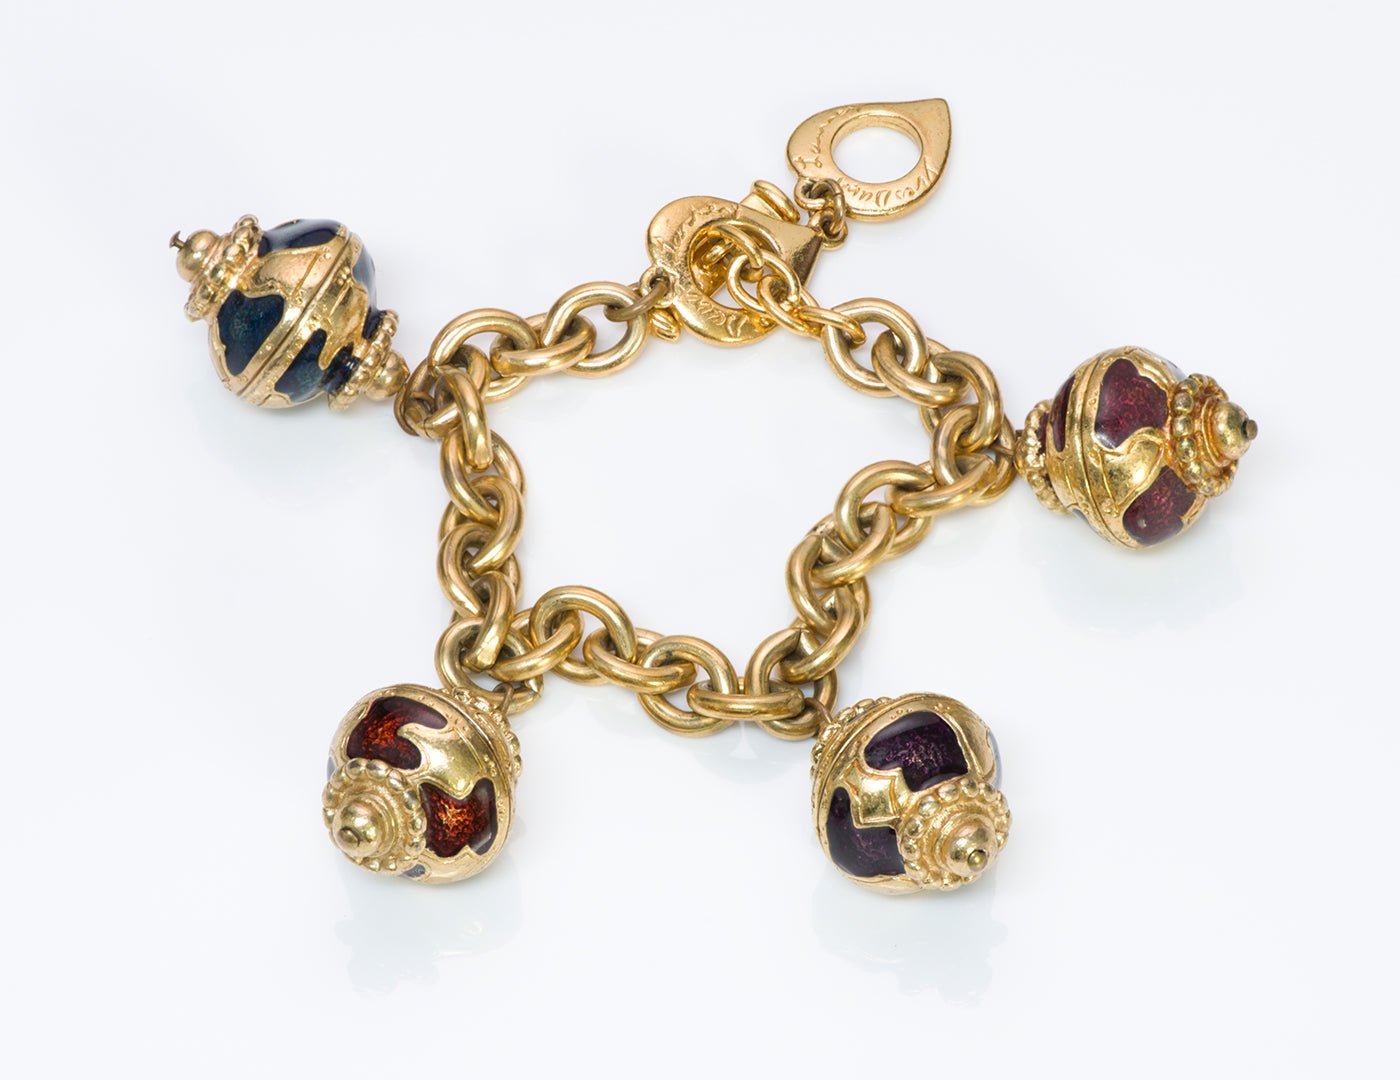 YSL Yves Saint Laurent Gold Tone Enamel Charm Bracelet